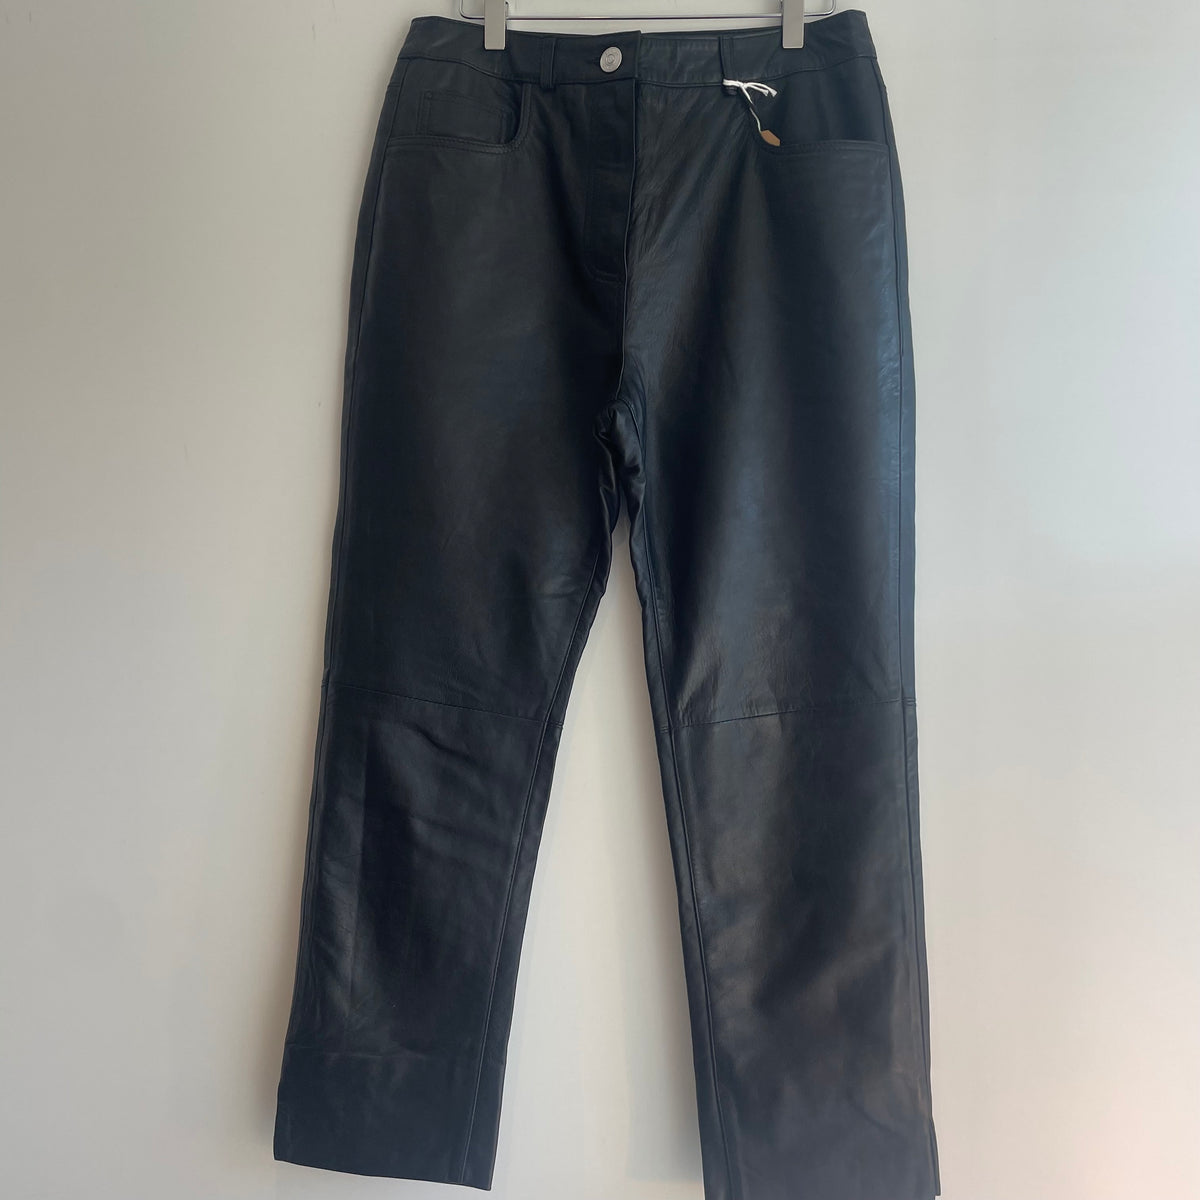 Sonder leather trouser Black 12